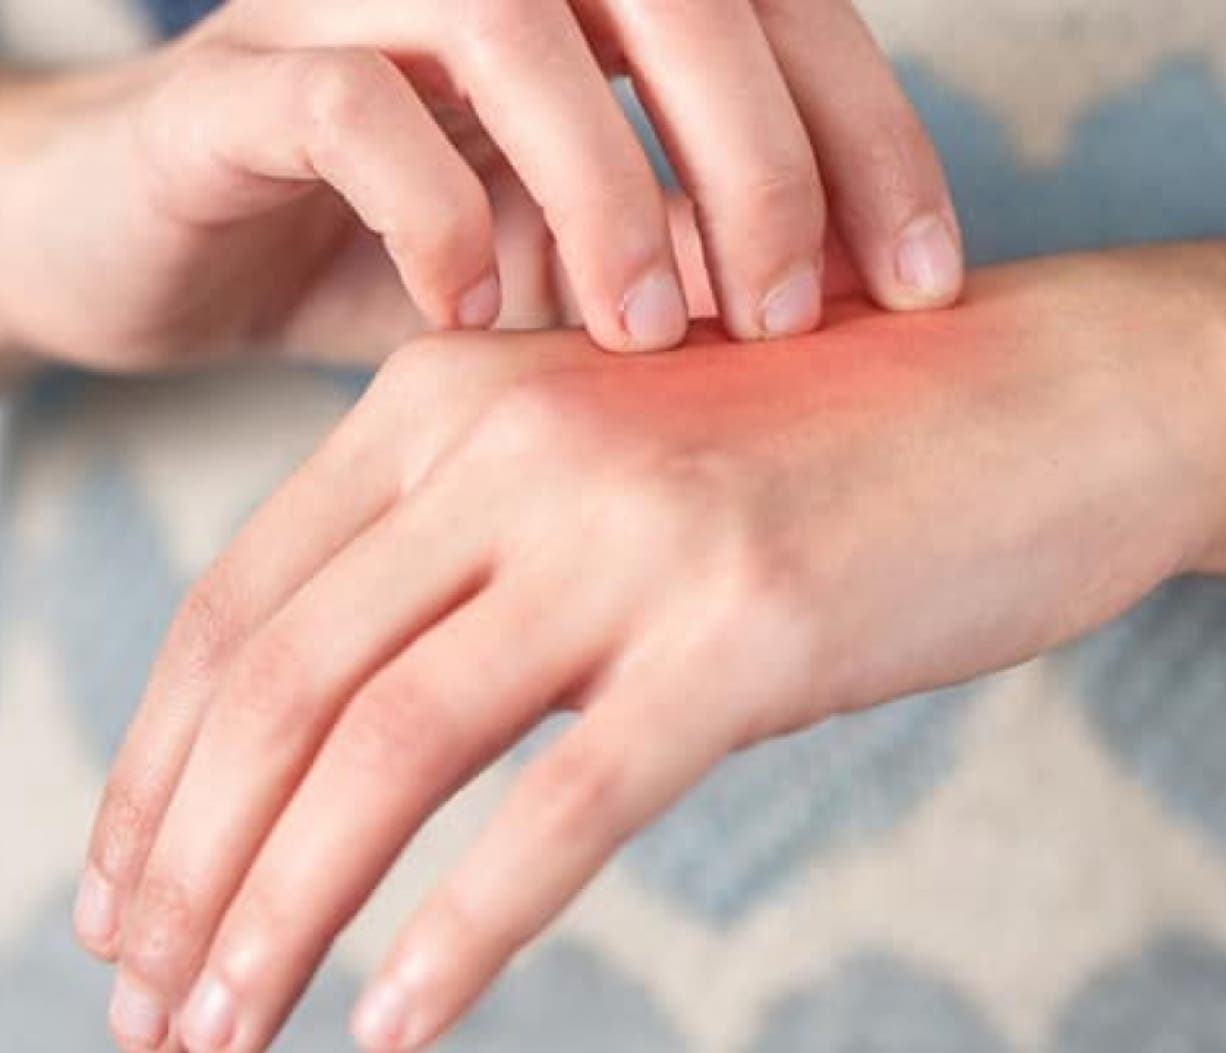 Lesiones en manos y pies son de alto riesgo, sugieren poner atención